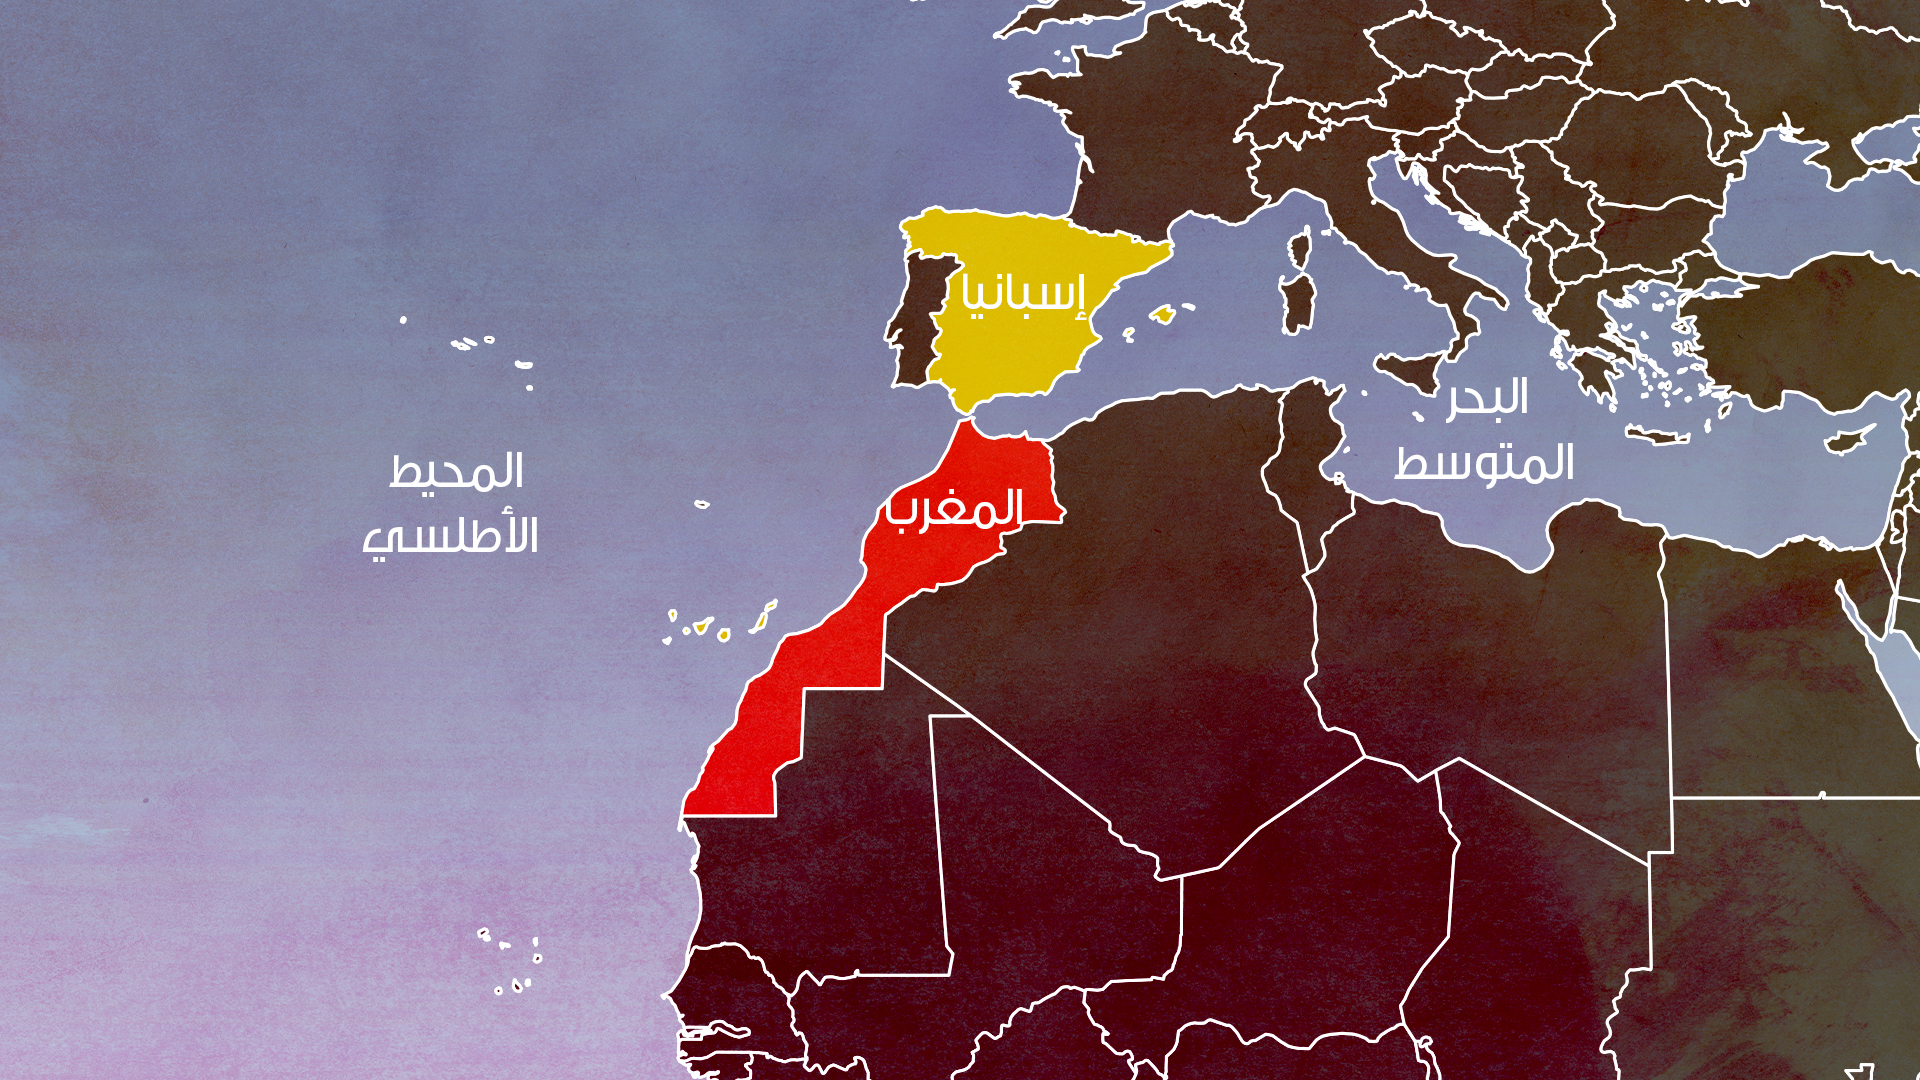 المفوضية الأوروبية تشيد بالتقارب المغربي الإسباني: يفيد الاتحاد الأوروبي والمغرب